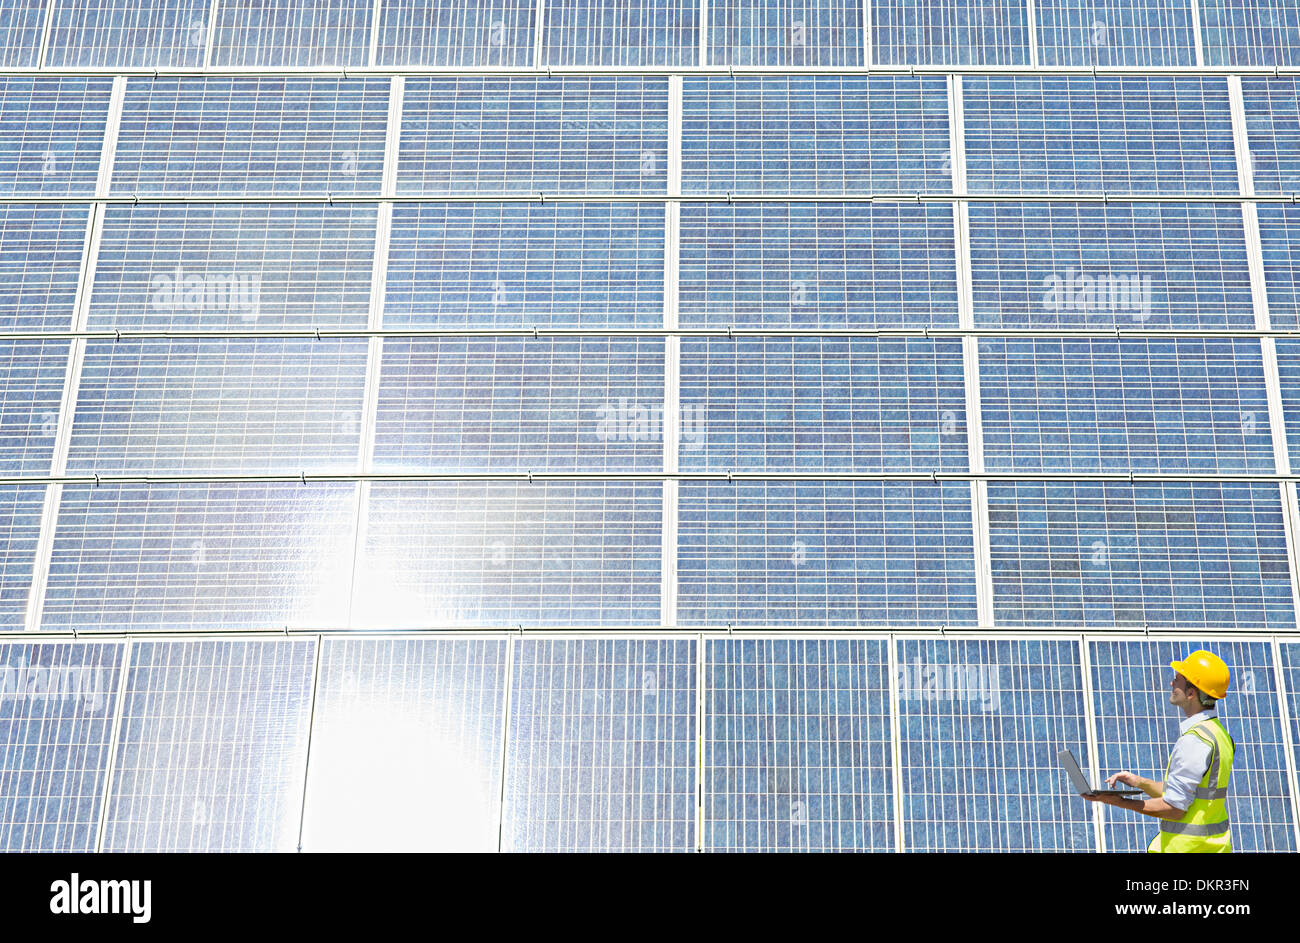 Arbeiter, die Prüfung von Solar-Panel in ländlichen Landschaft Stockfoto